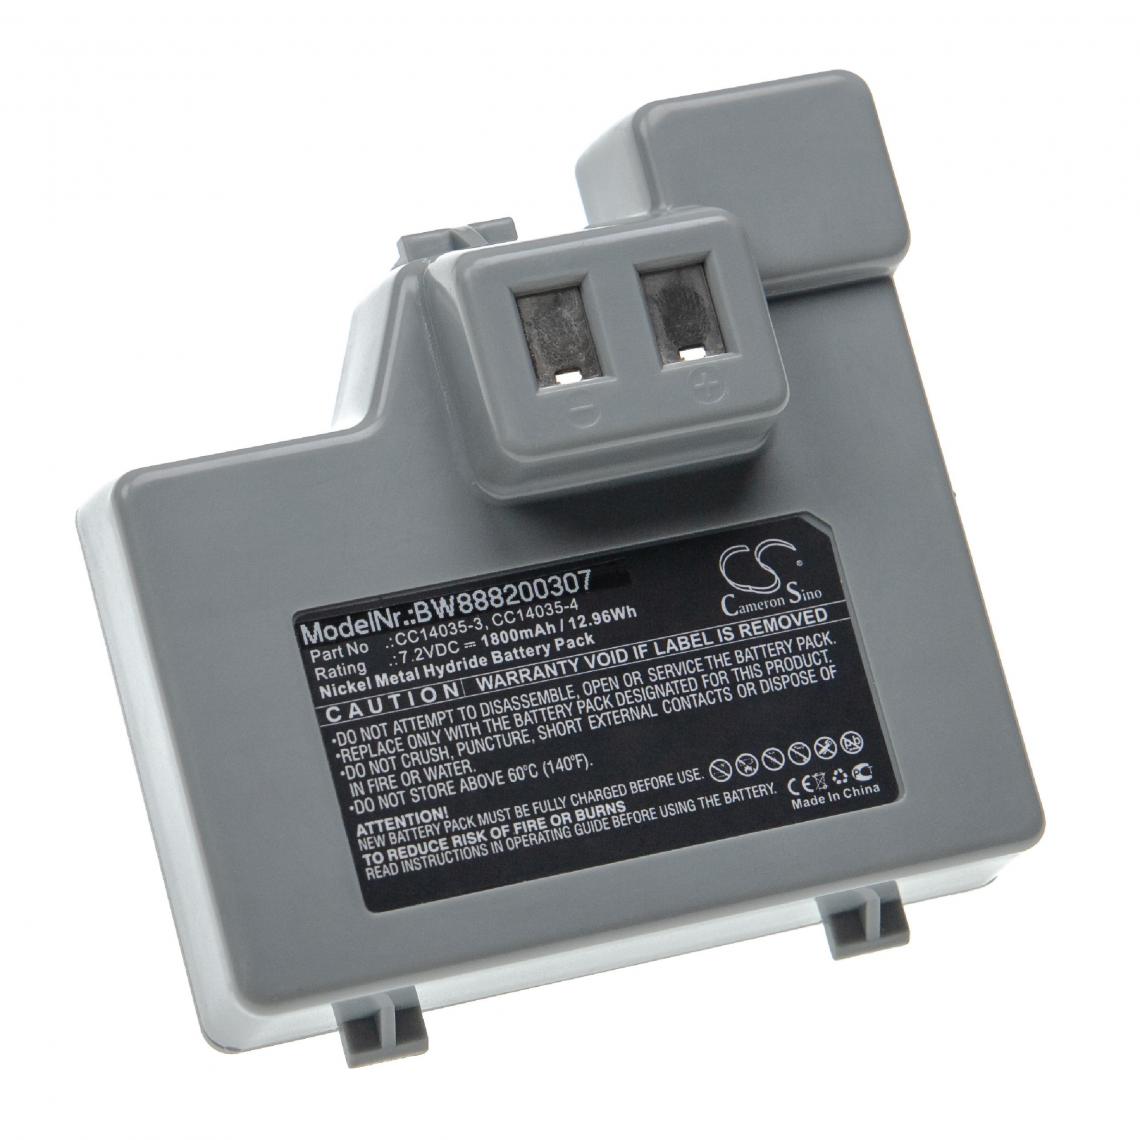 Vhbw - vhbw Batterie remplacement pour Zebra CC14035-3, CC14035-4 pour imprimante, scanner, imprimante d'étiquettes (1800mAh, 7,2V, NiMH) - Imprimante Jet d'encre